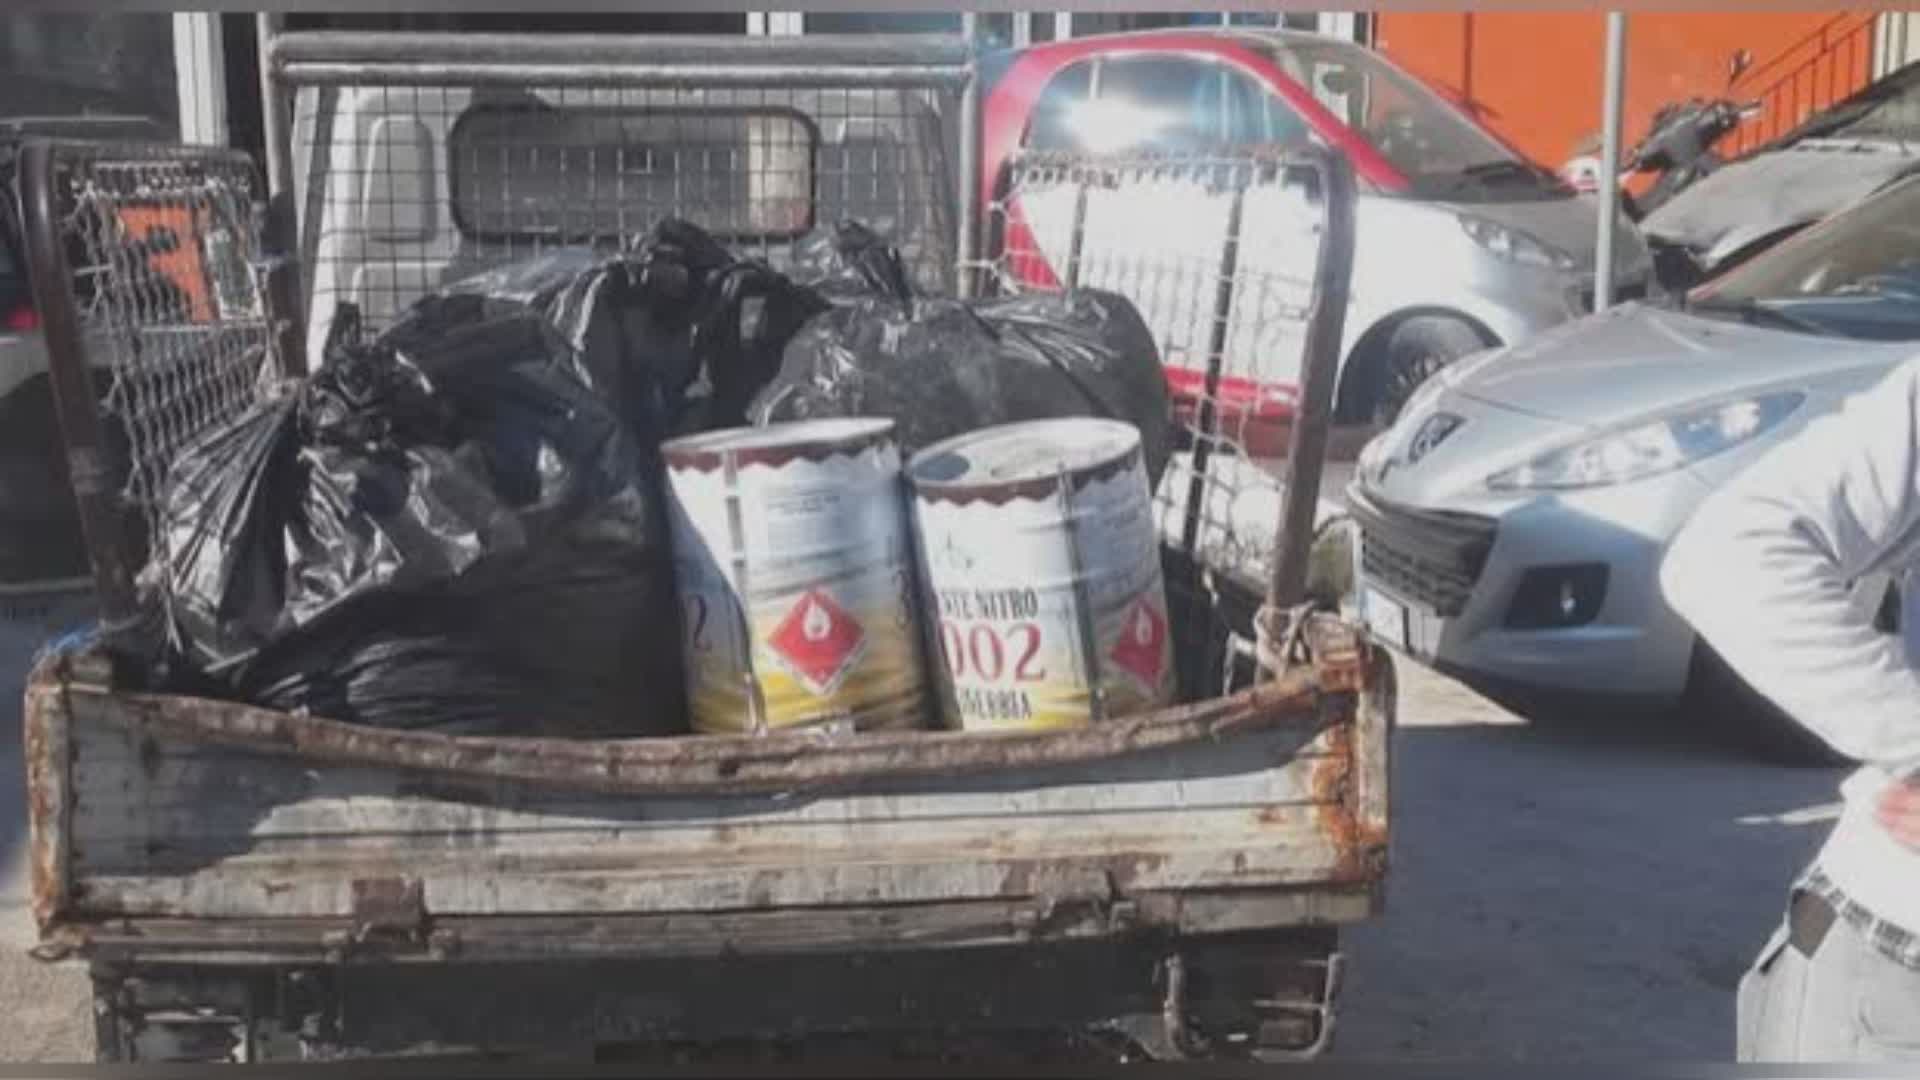 Smaltimento illecito e trasporto rifiuti pericolosi: fermato autista